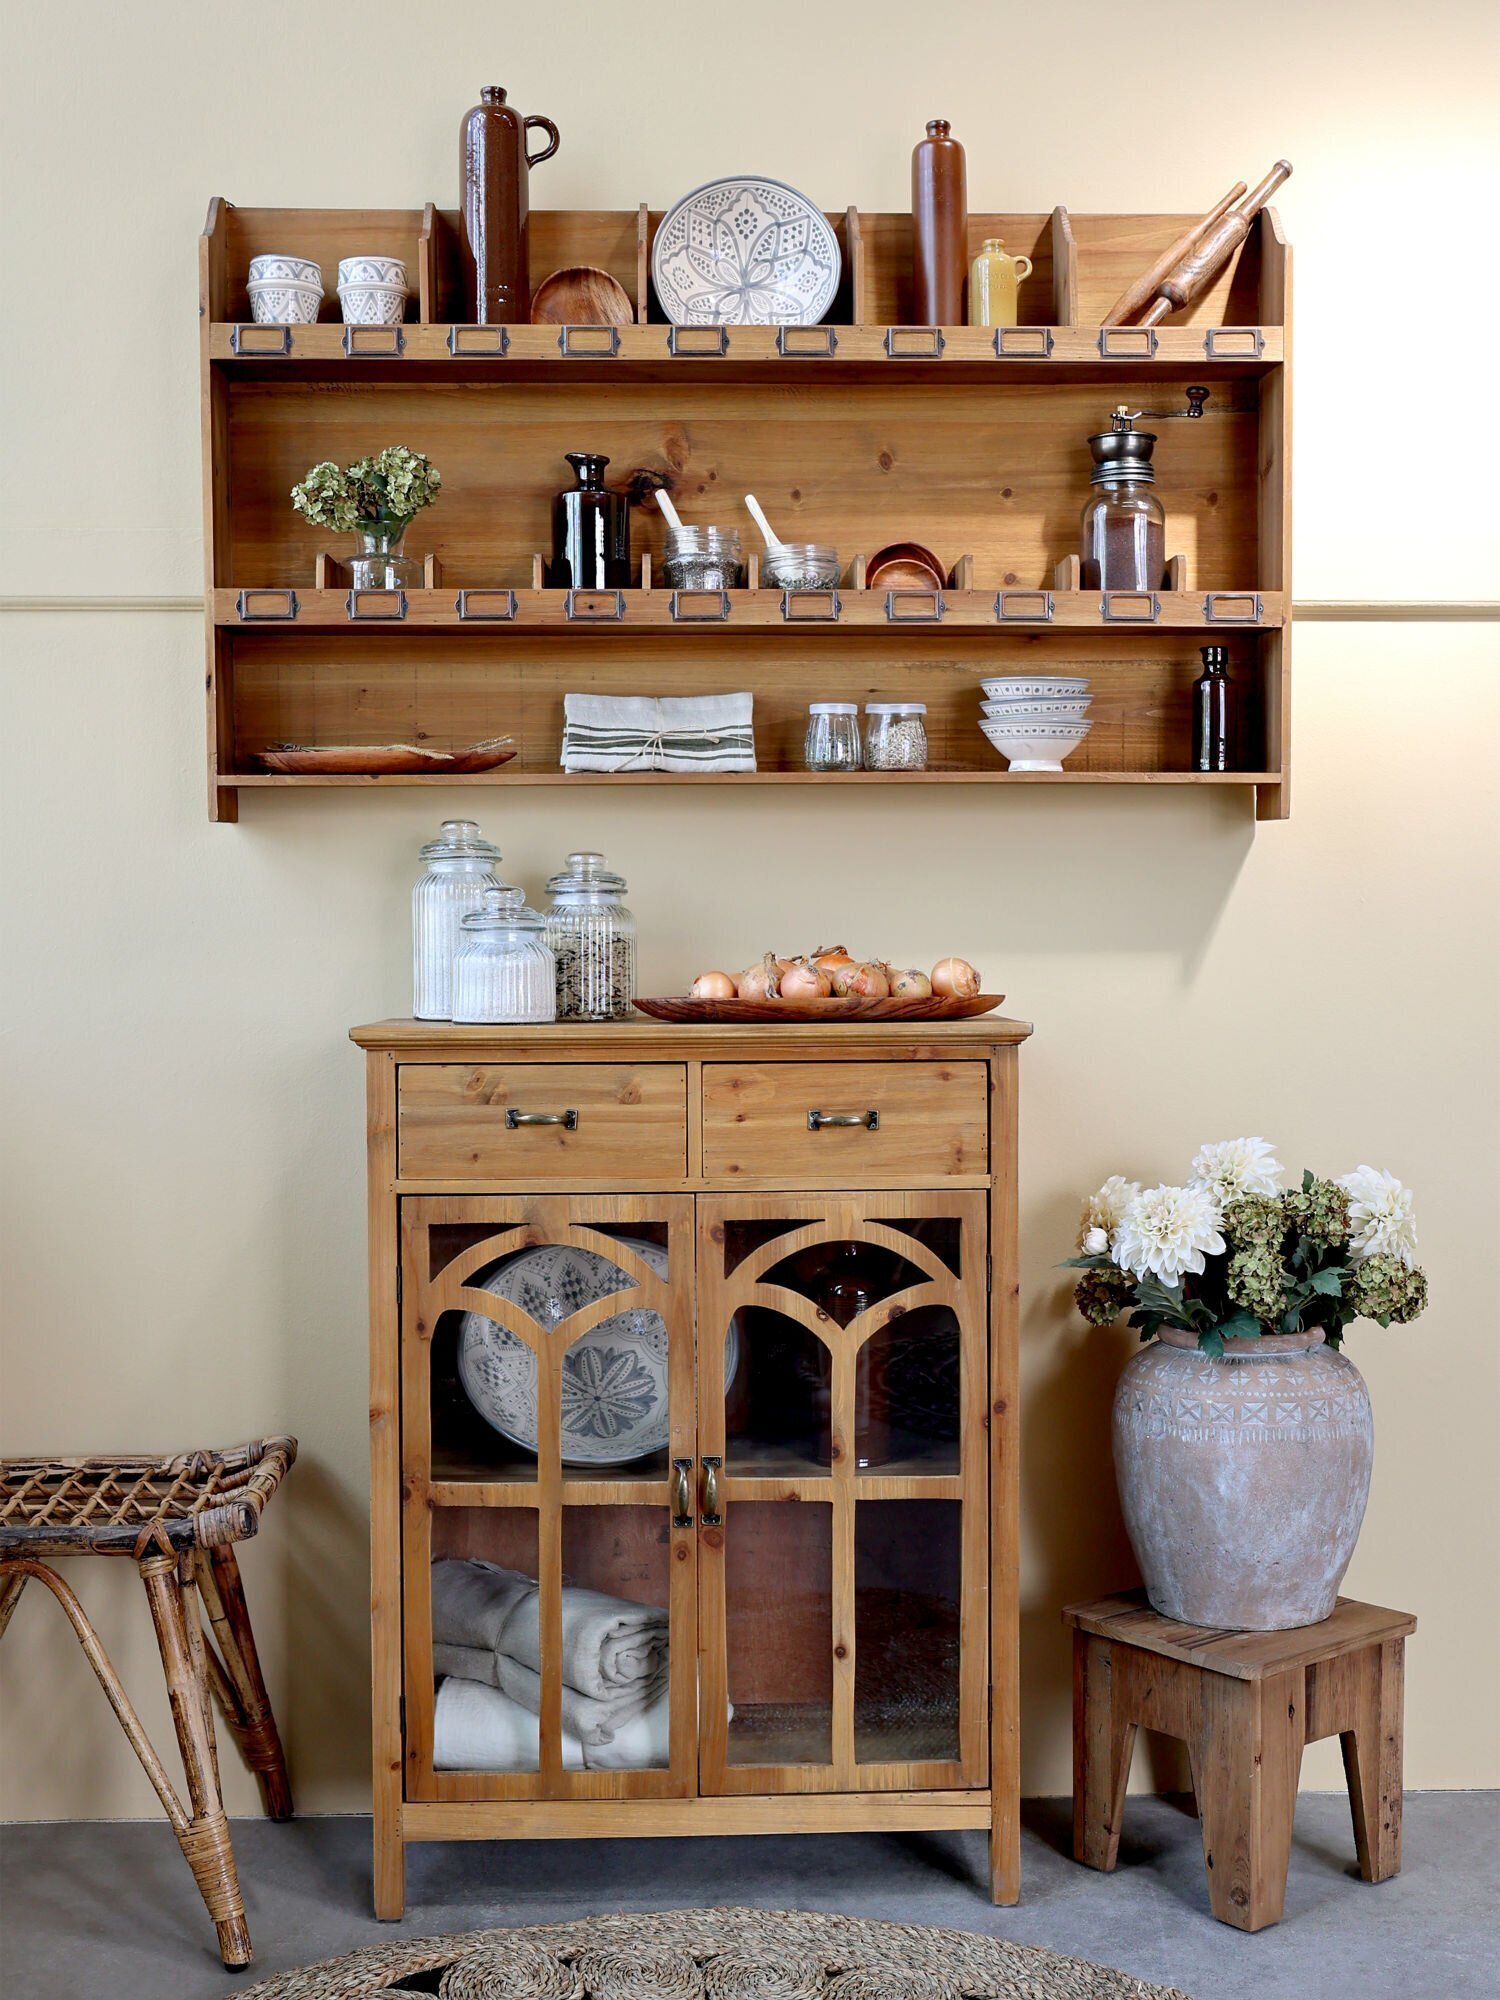 Gemütliche und rustikale Kücheneinrichtung mit Chic Antique